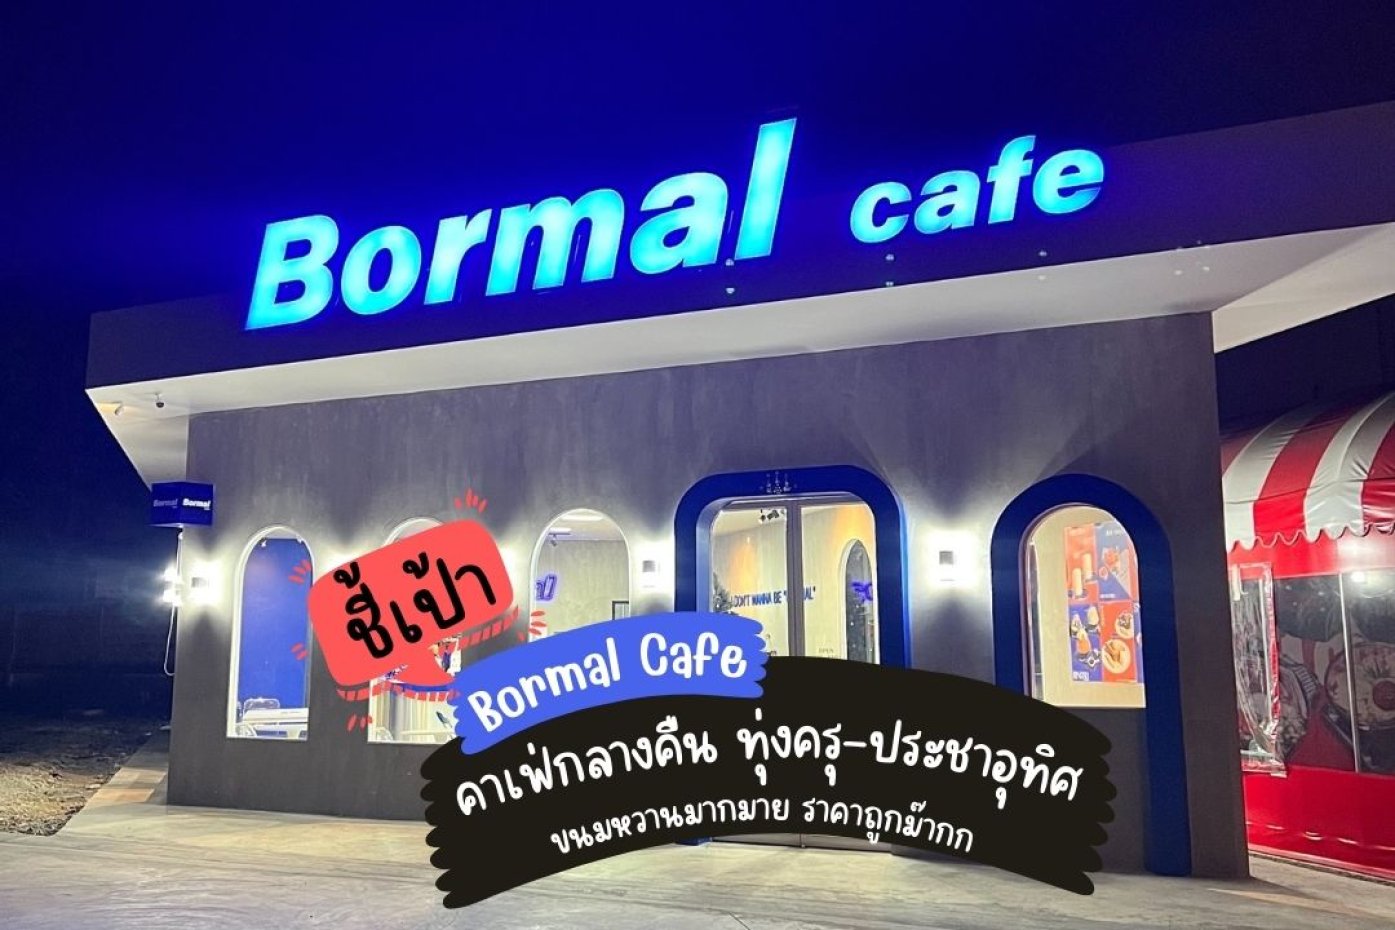 Bormal Cafe : กรุงเทพมหานคร